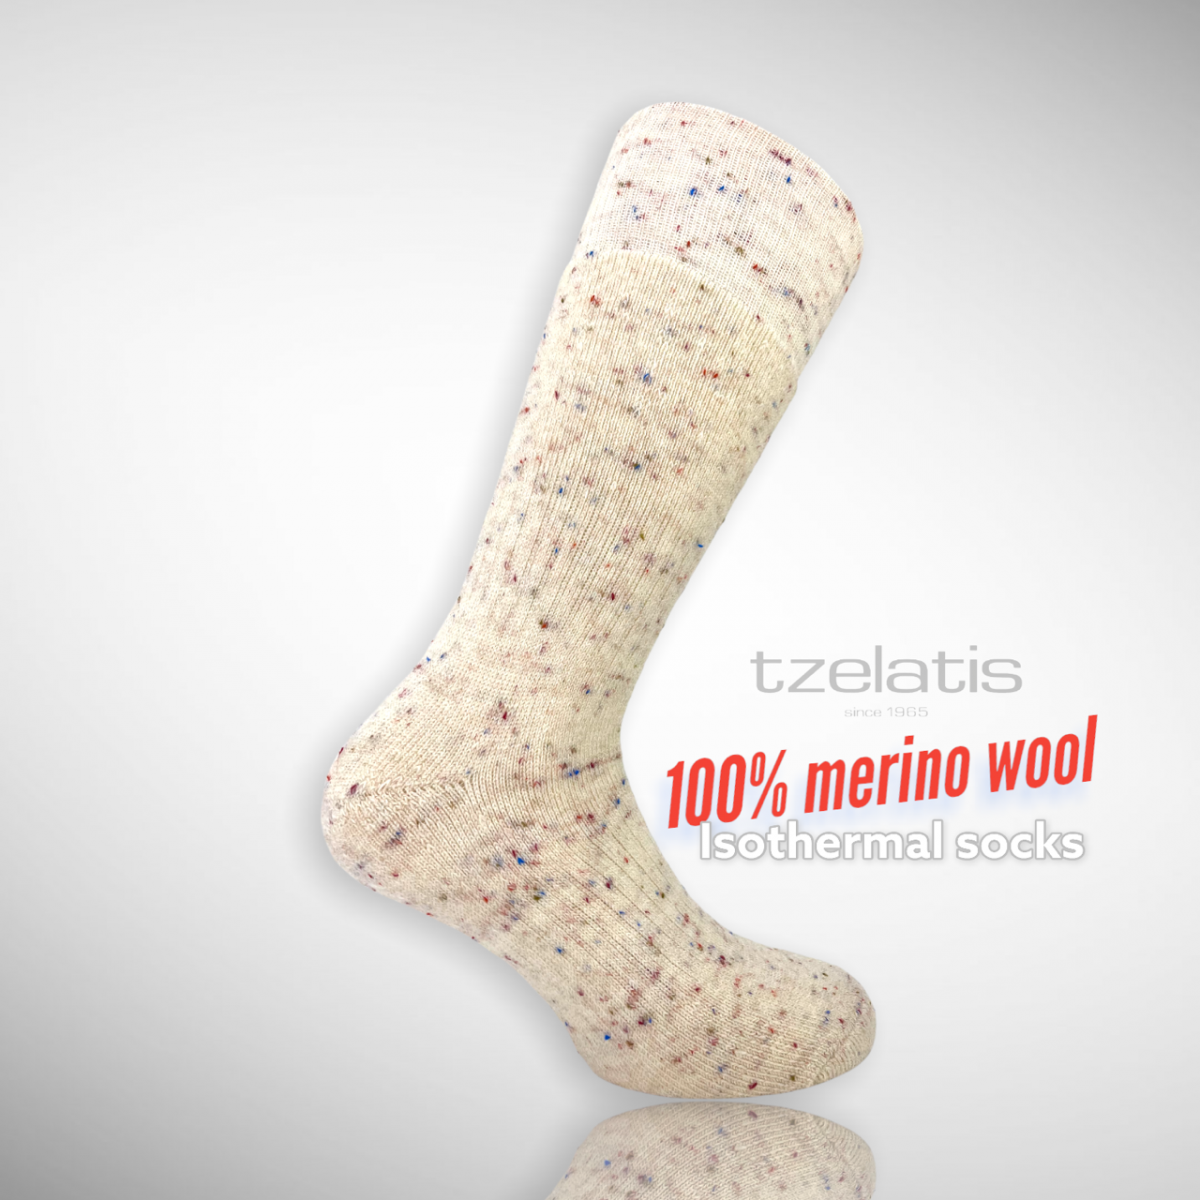 Tzelatis 718 - 100% Merino wool Isothermal